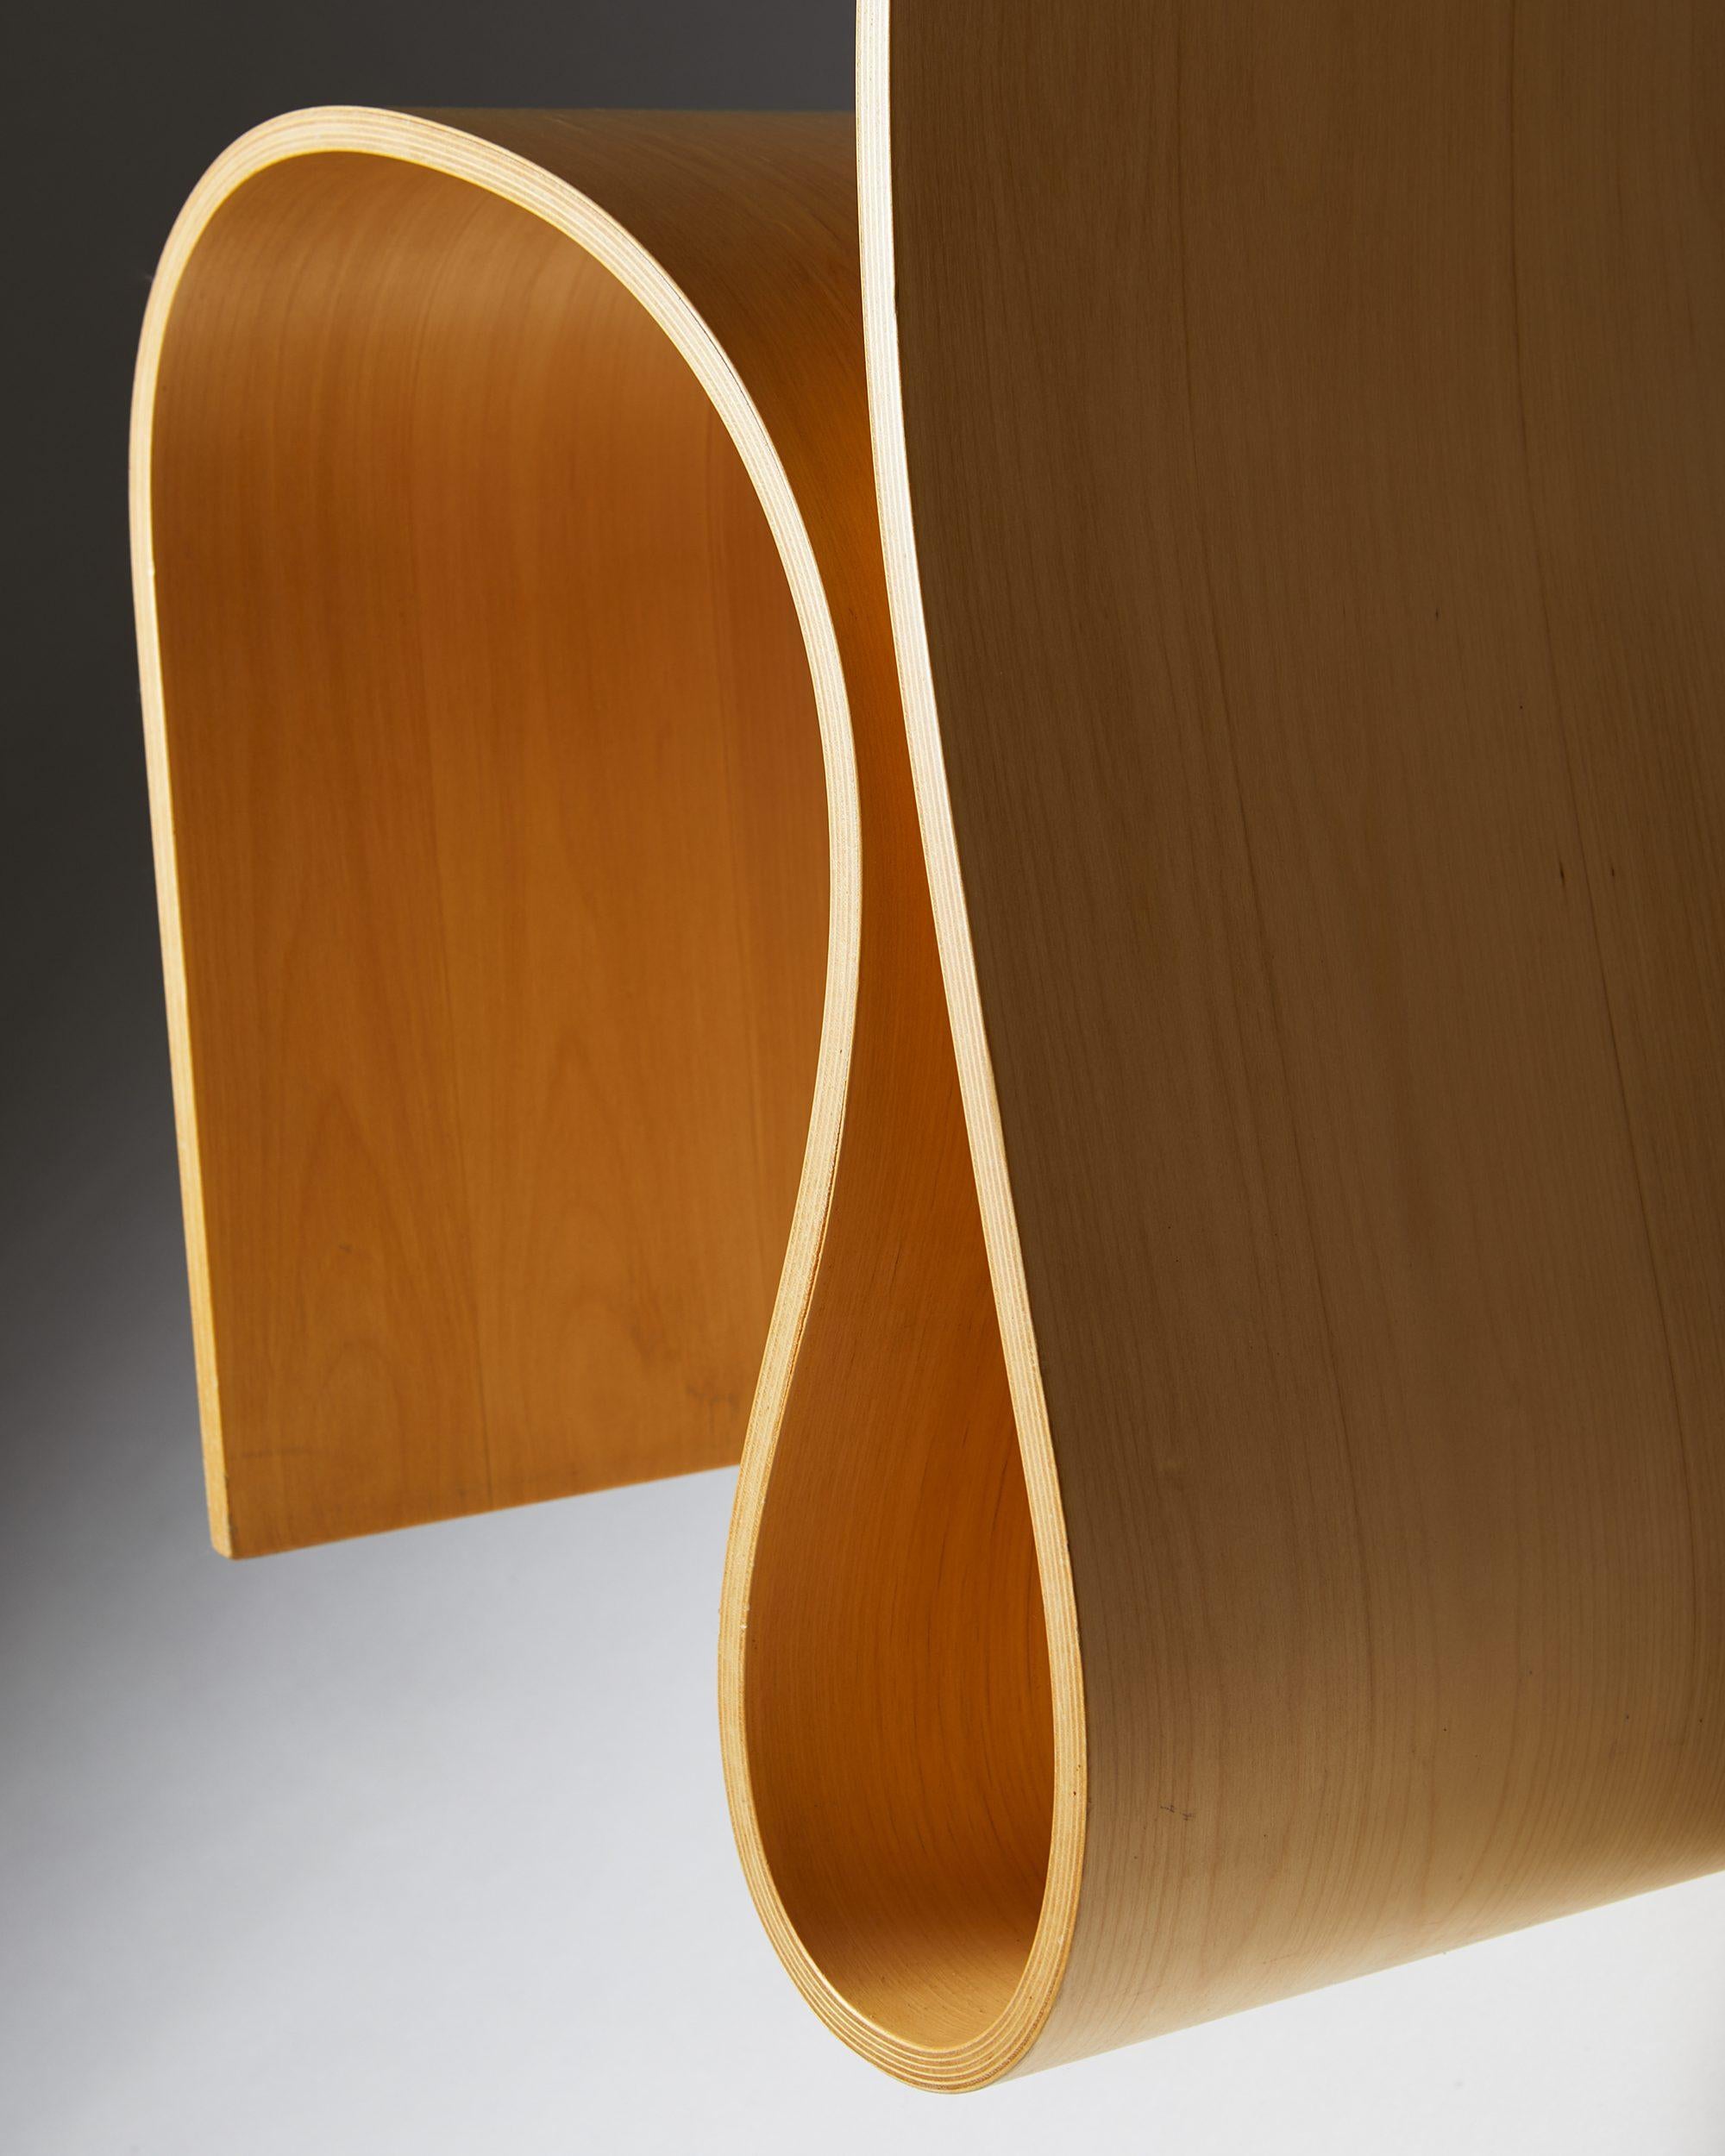 Birch Chair, Lilla H. Designed by Caroline Schlyter, Sweden, 1989